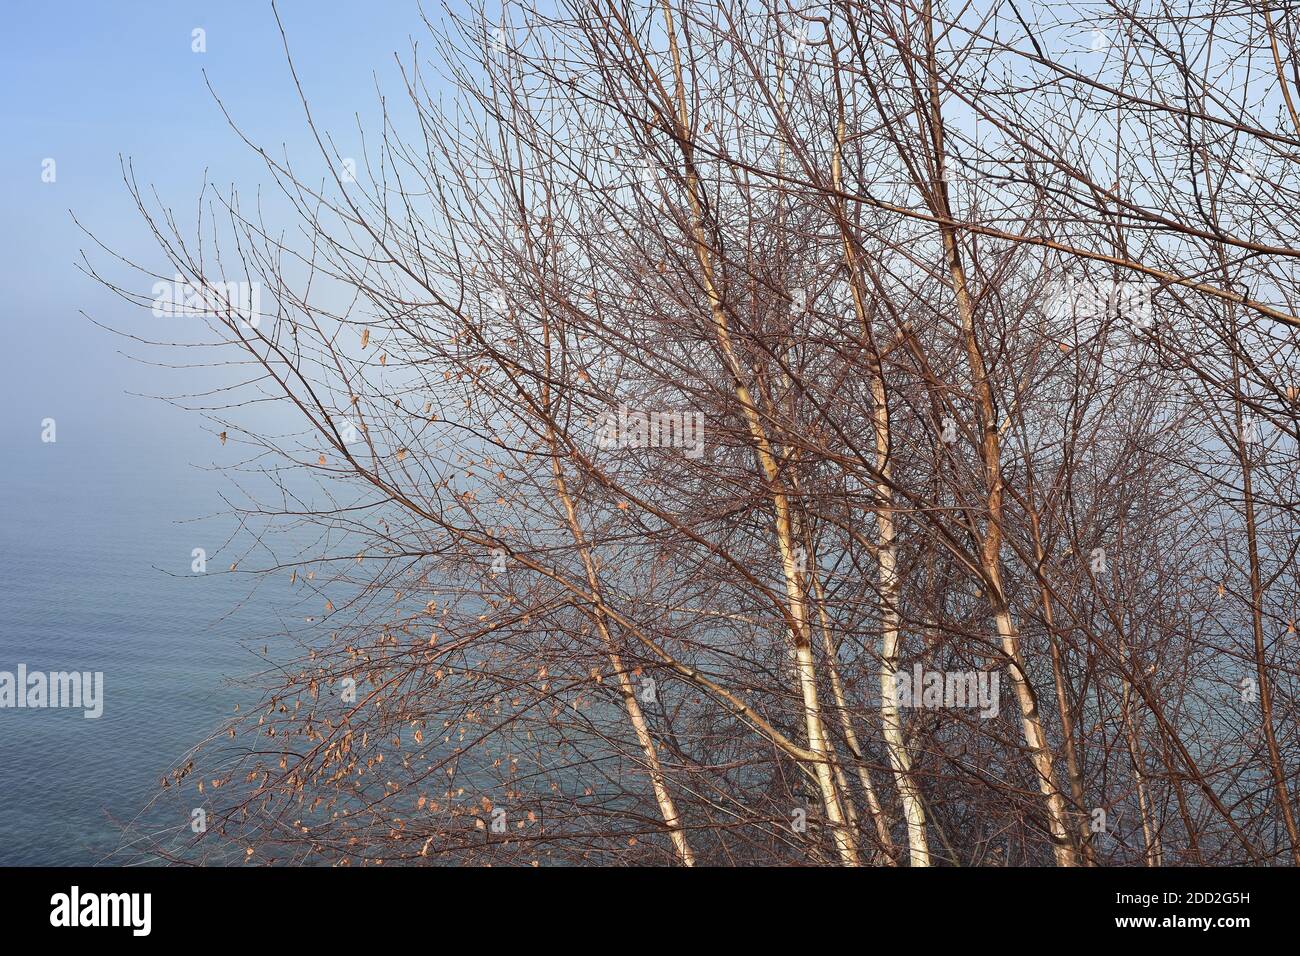 Árboles sin hojas con corteza blanca en troncos a orillas del lago ocultos por la desaparición de la niebla matutina. Foto de stock